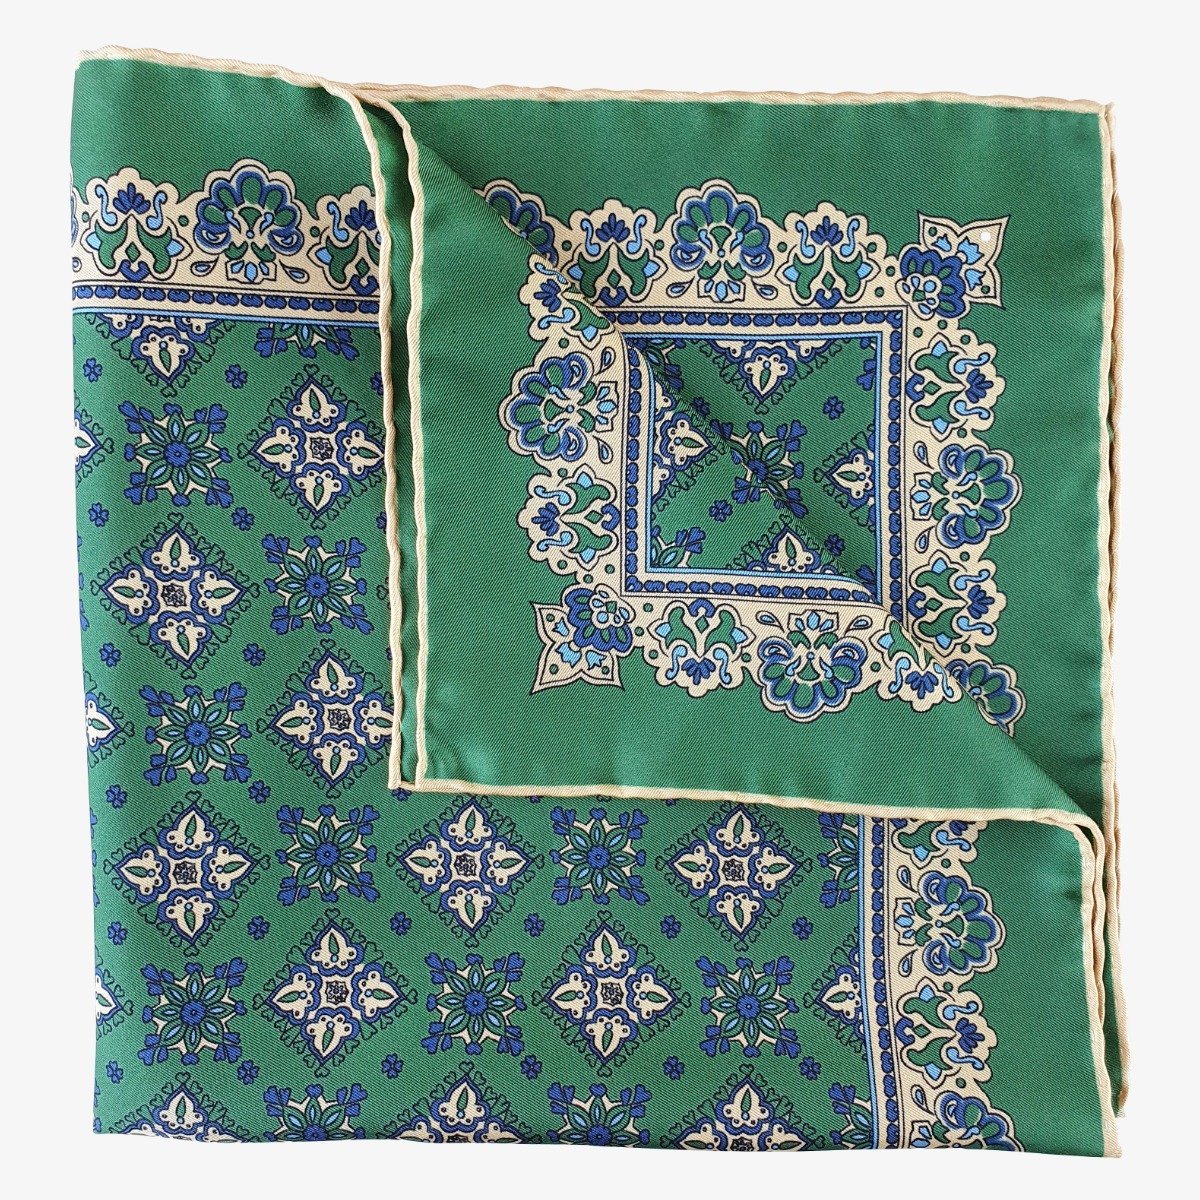 Serà Fine Silk Amarone Moss green silk pocket square